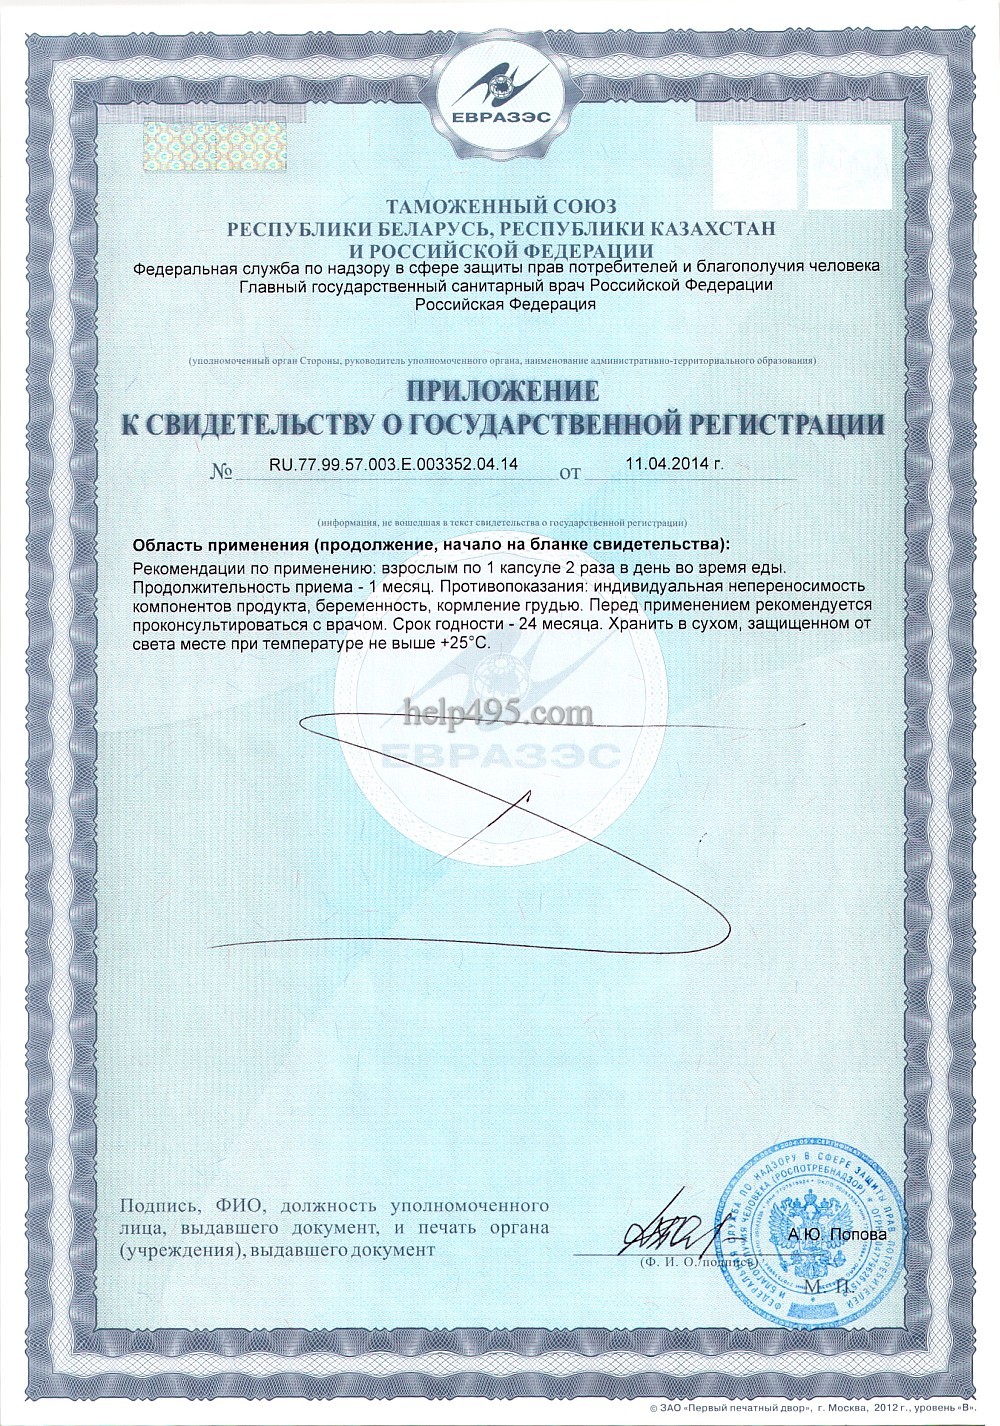 2-ая стр. сертификата препарата: Капсулы Супер Серен Тяньши